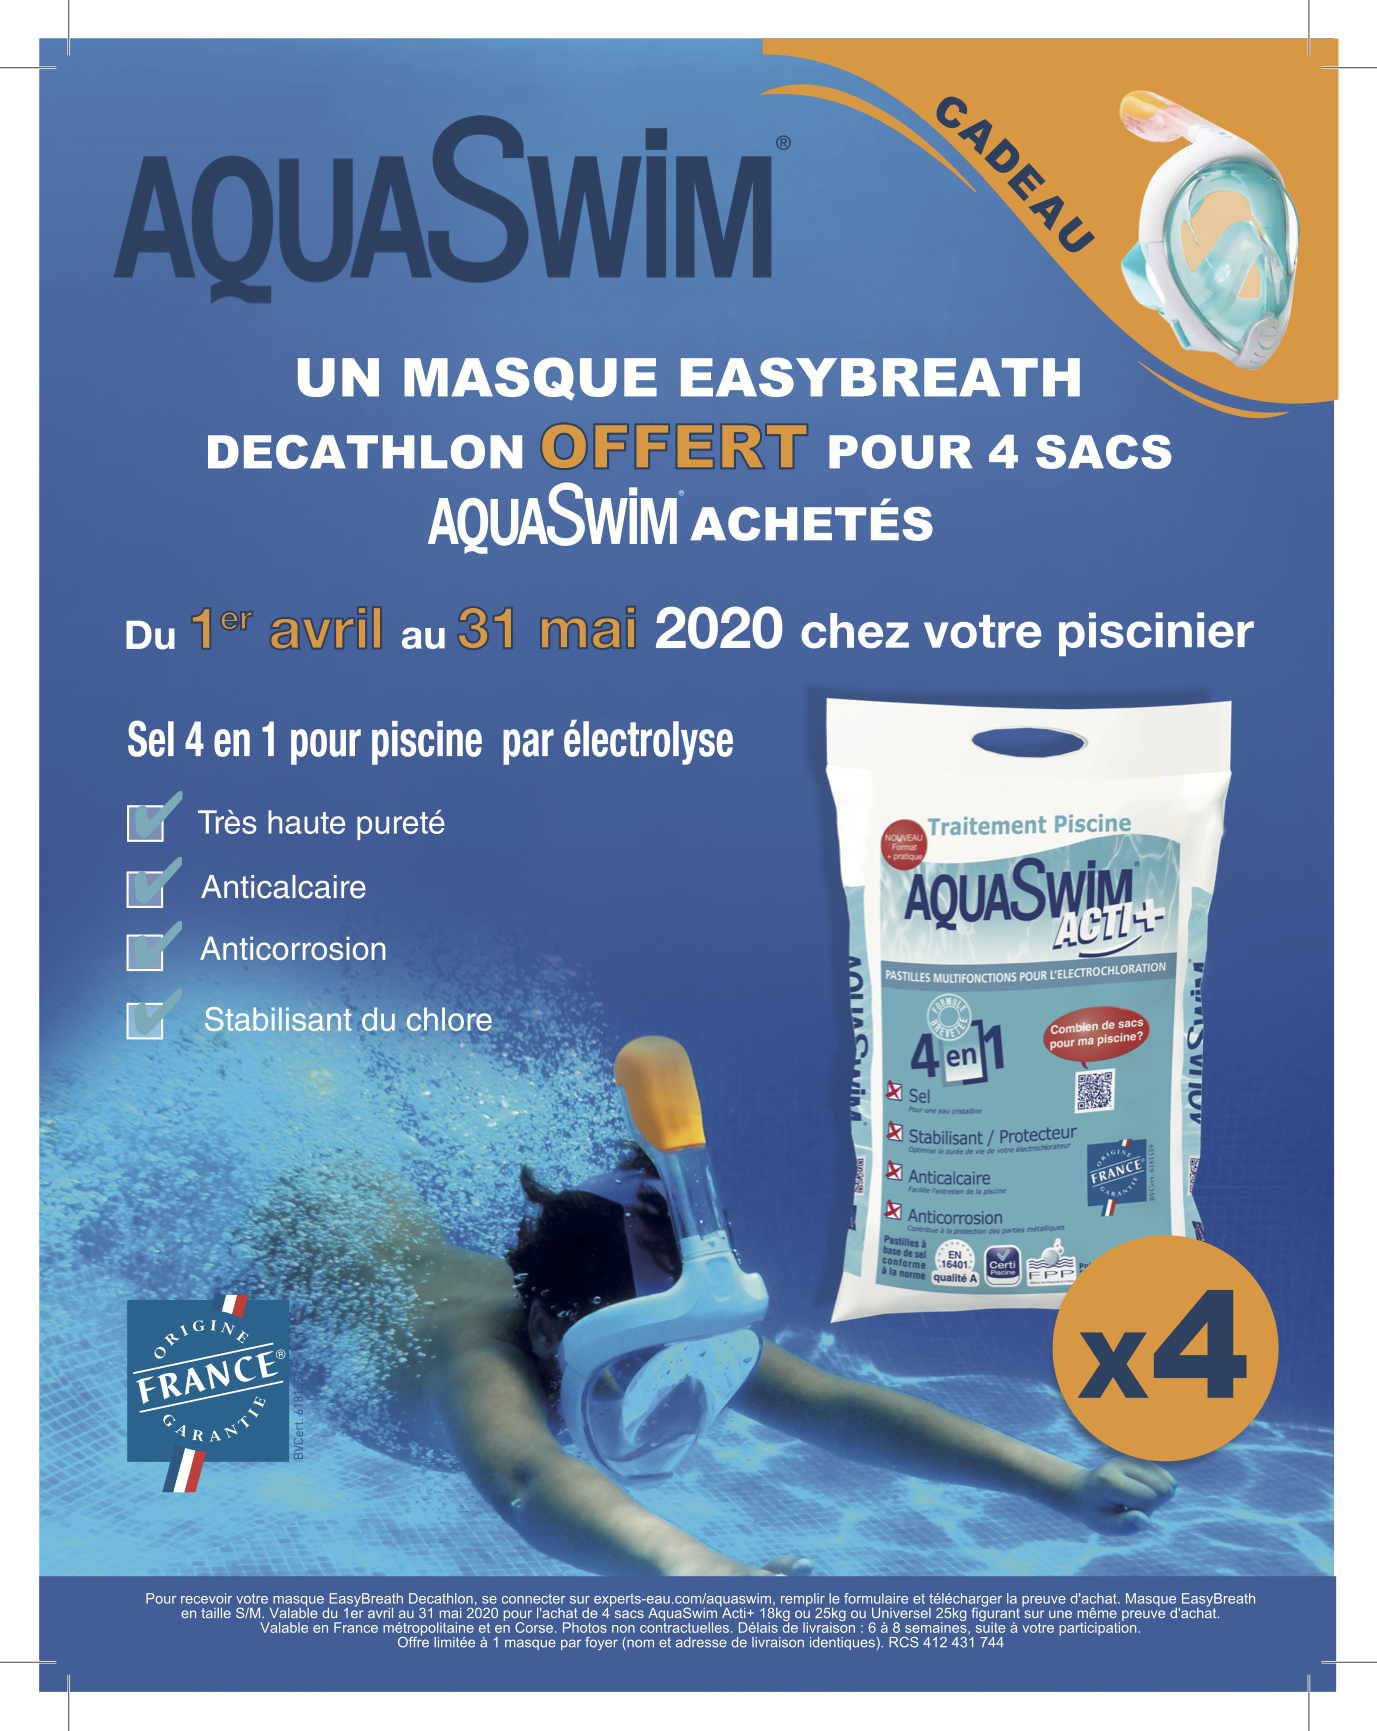 AquaSwim Acti+ : un sel 4 en 1 innovant pour le traitement de votre piscine